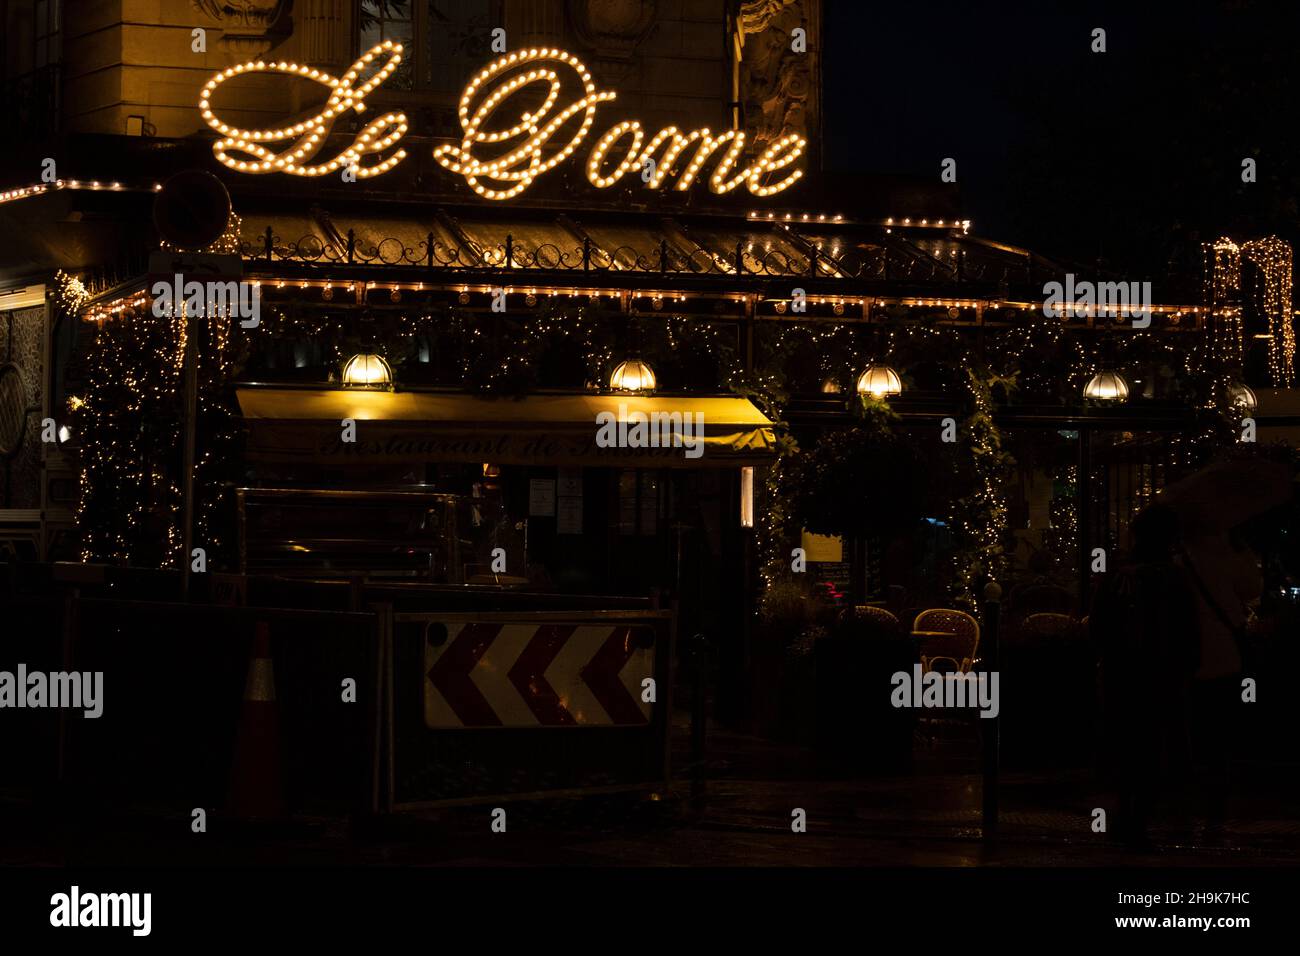 Paris after dark - Le Dome restaurant - Montparnasse the 14th arrondissement France Stock Photo